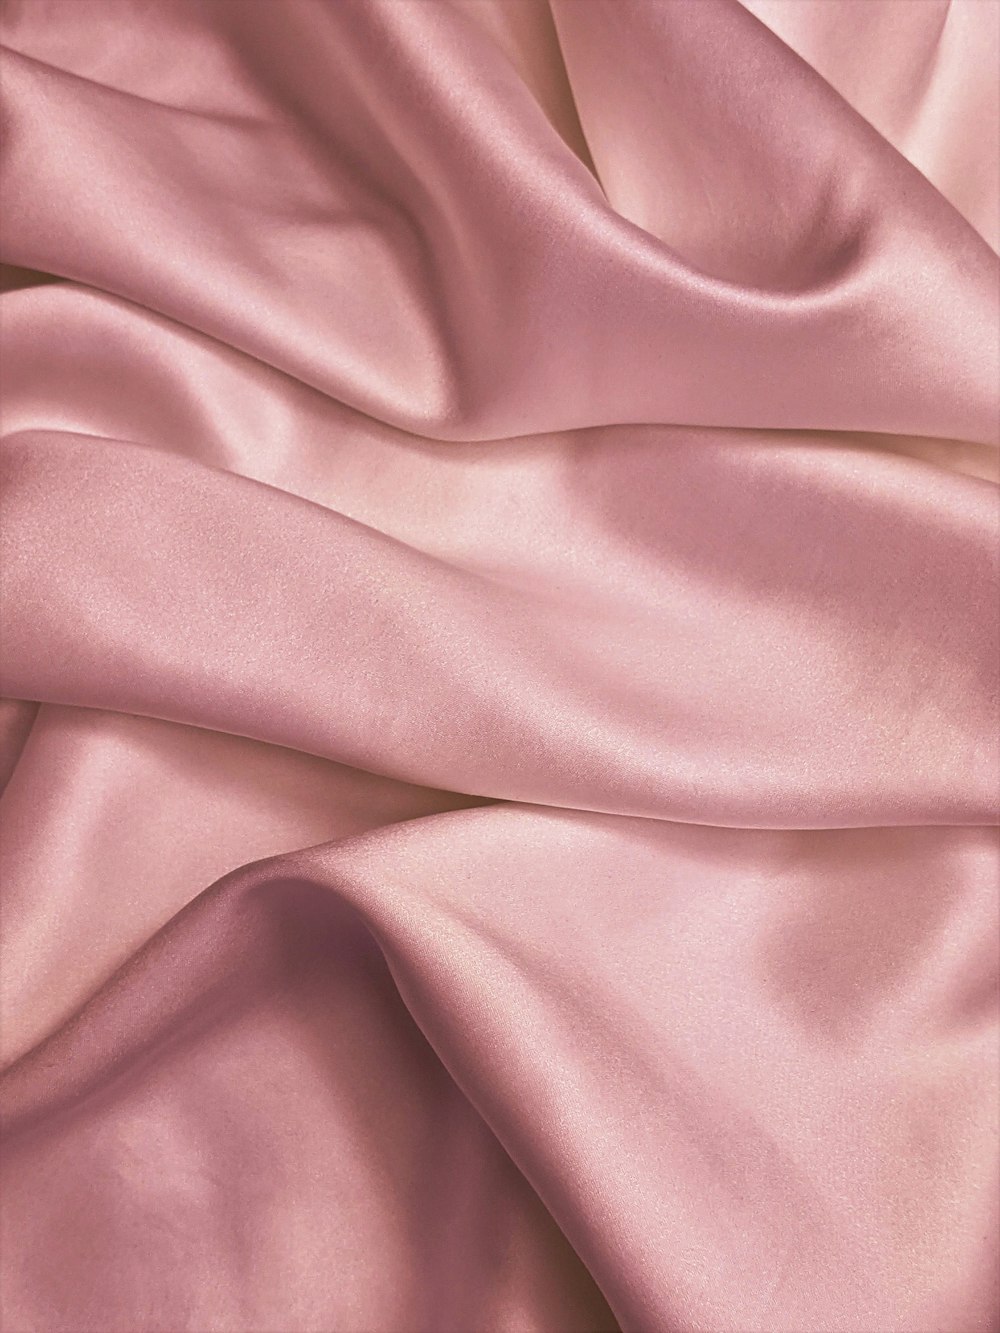 rosa Textil in Nahaufnahmen